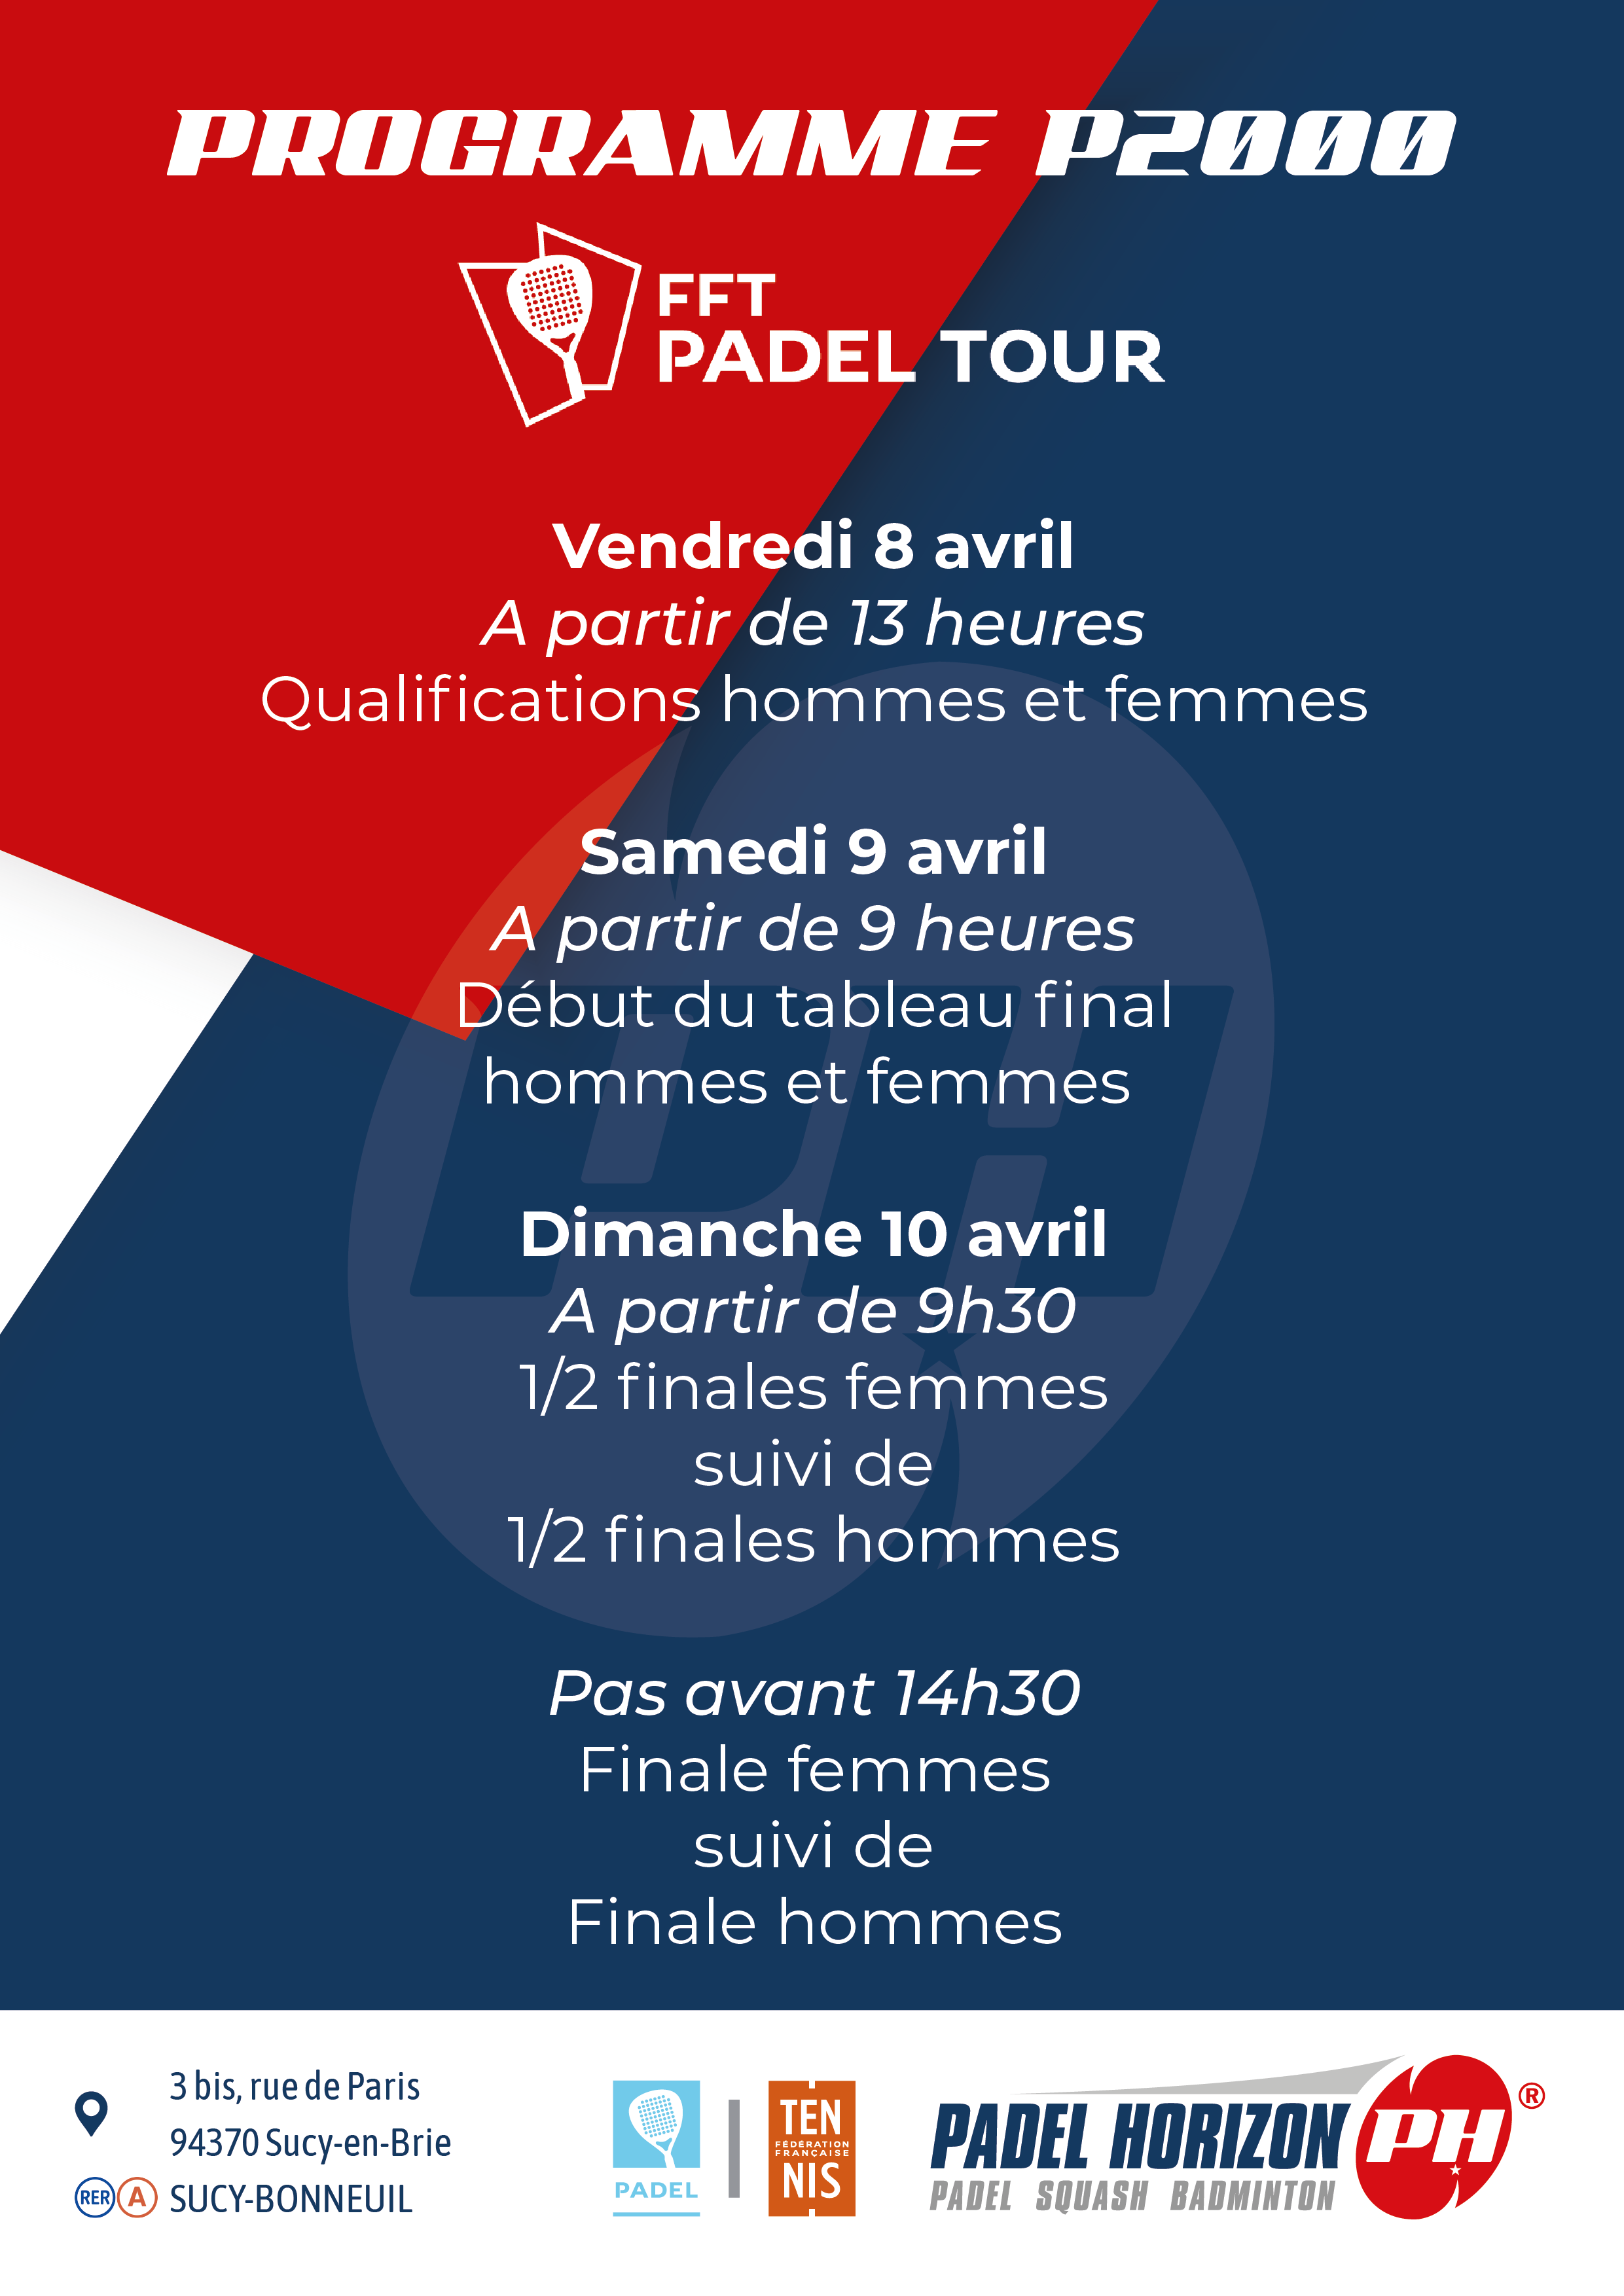 fft padel tour padel 地平线2022